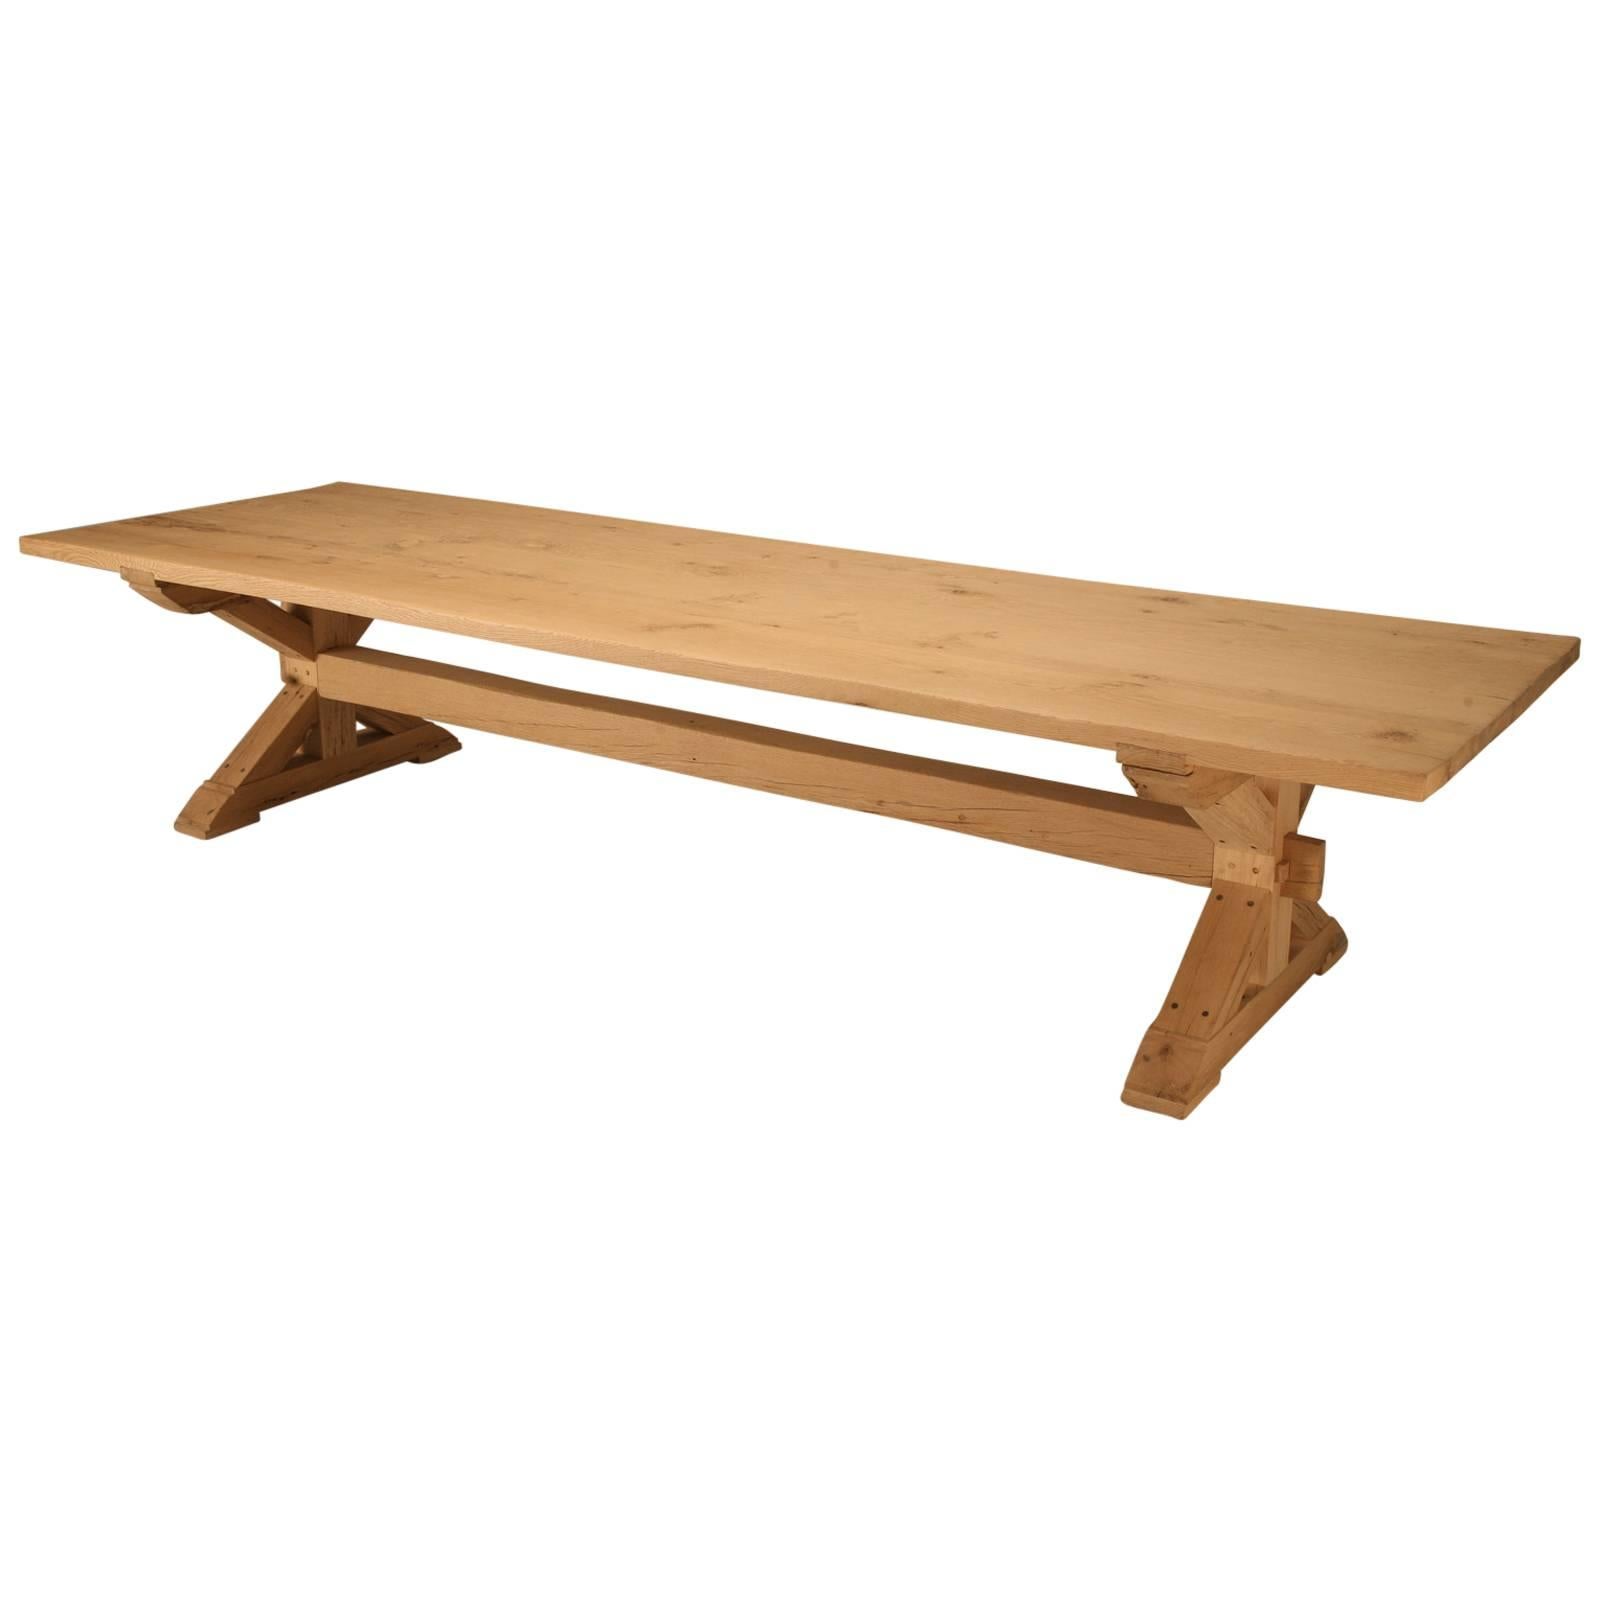 Maßgefertigter Bauerntisch aus aufgearbeiteter weißer Eiche, erhältlich in jeder Größe von Old Plank